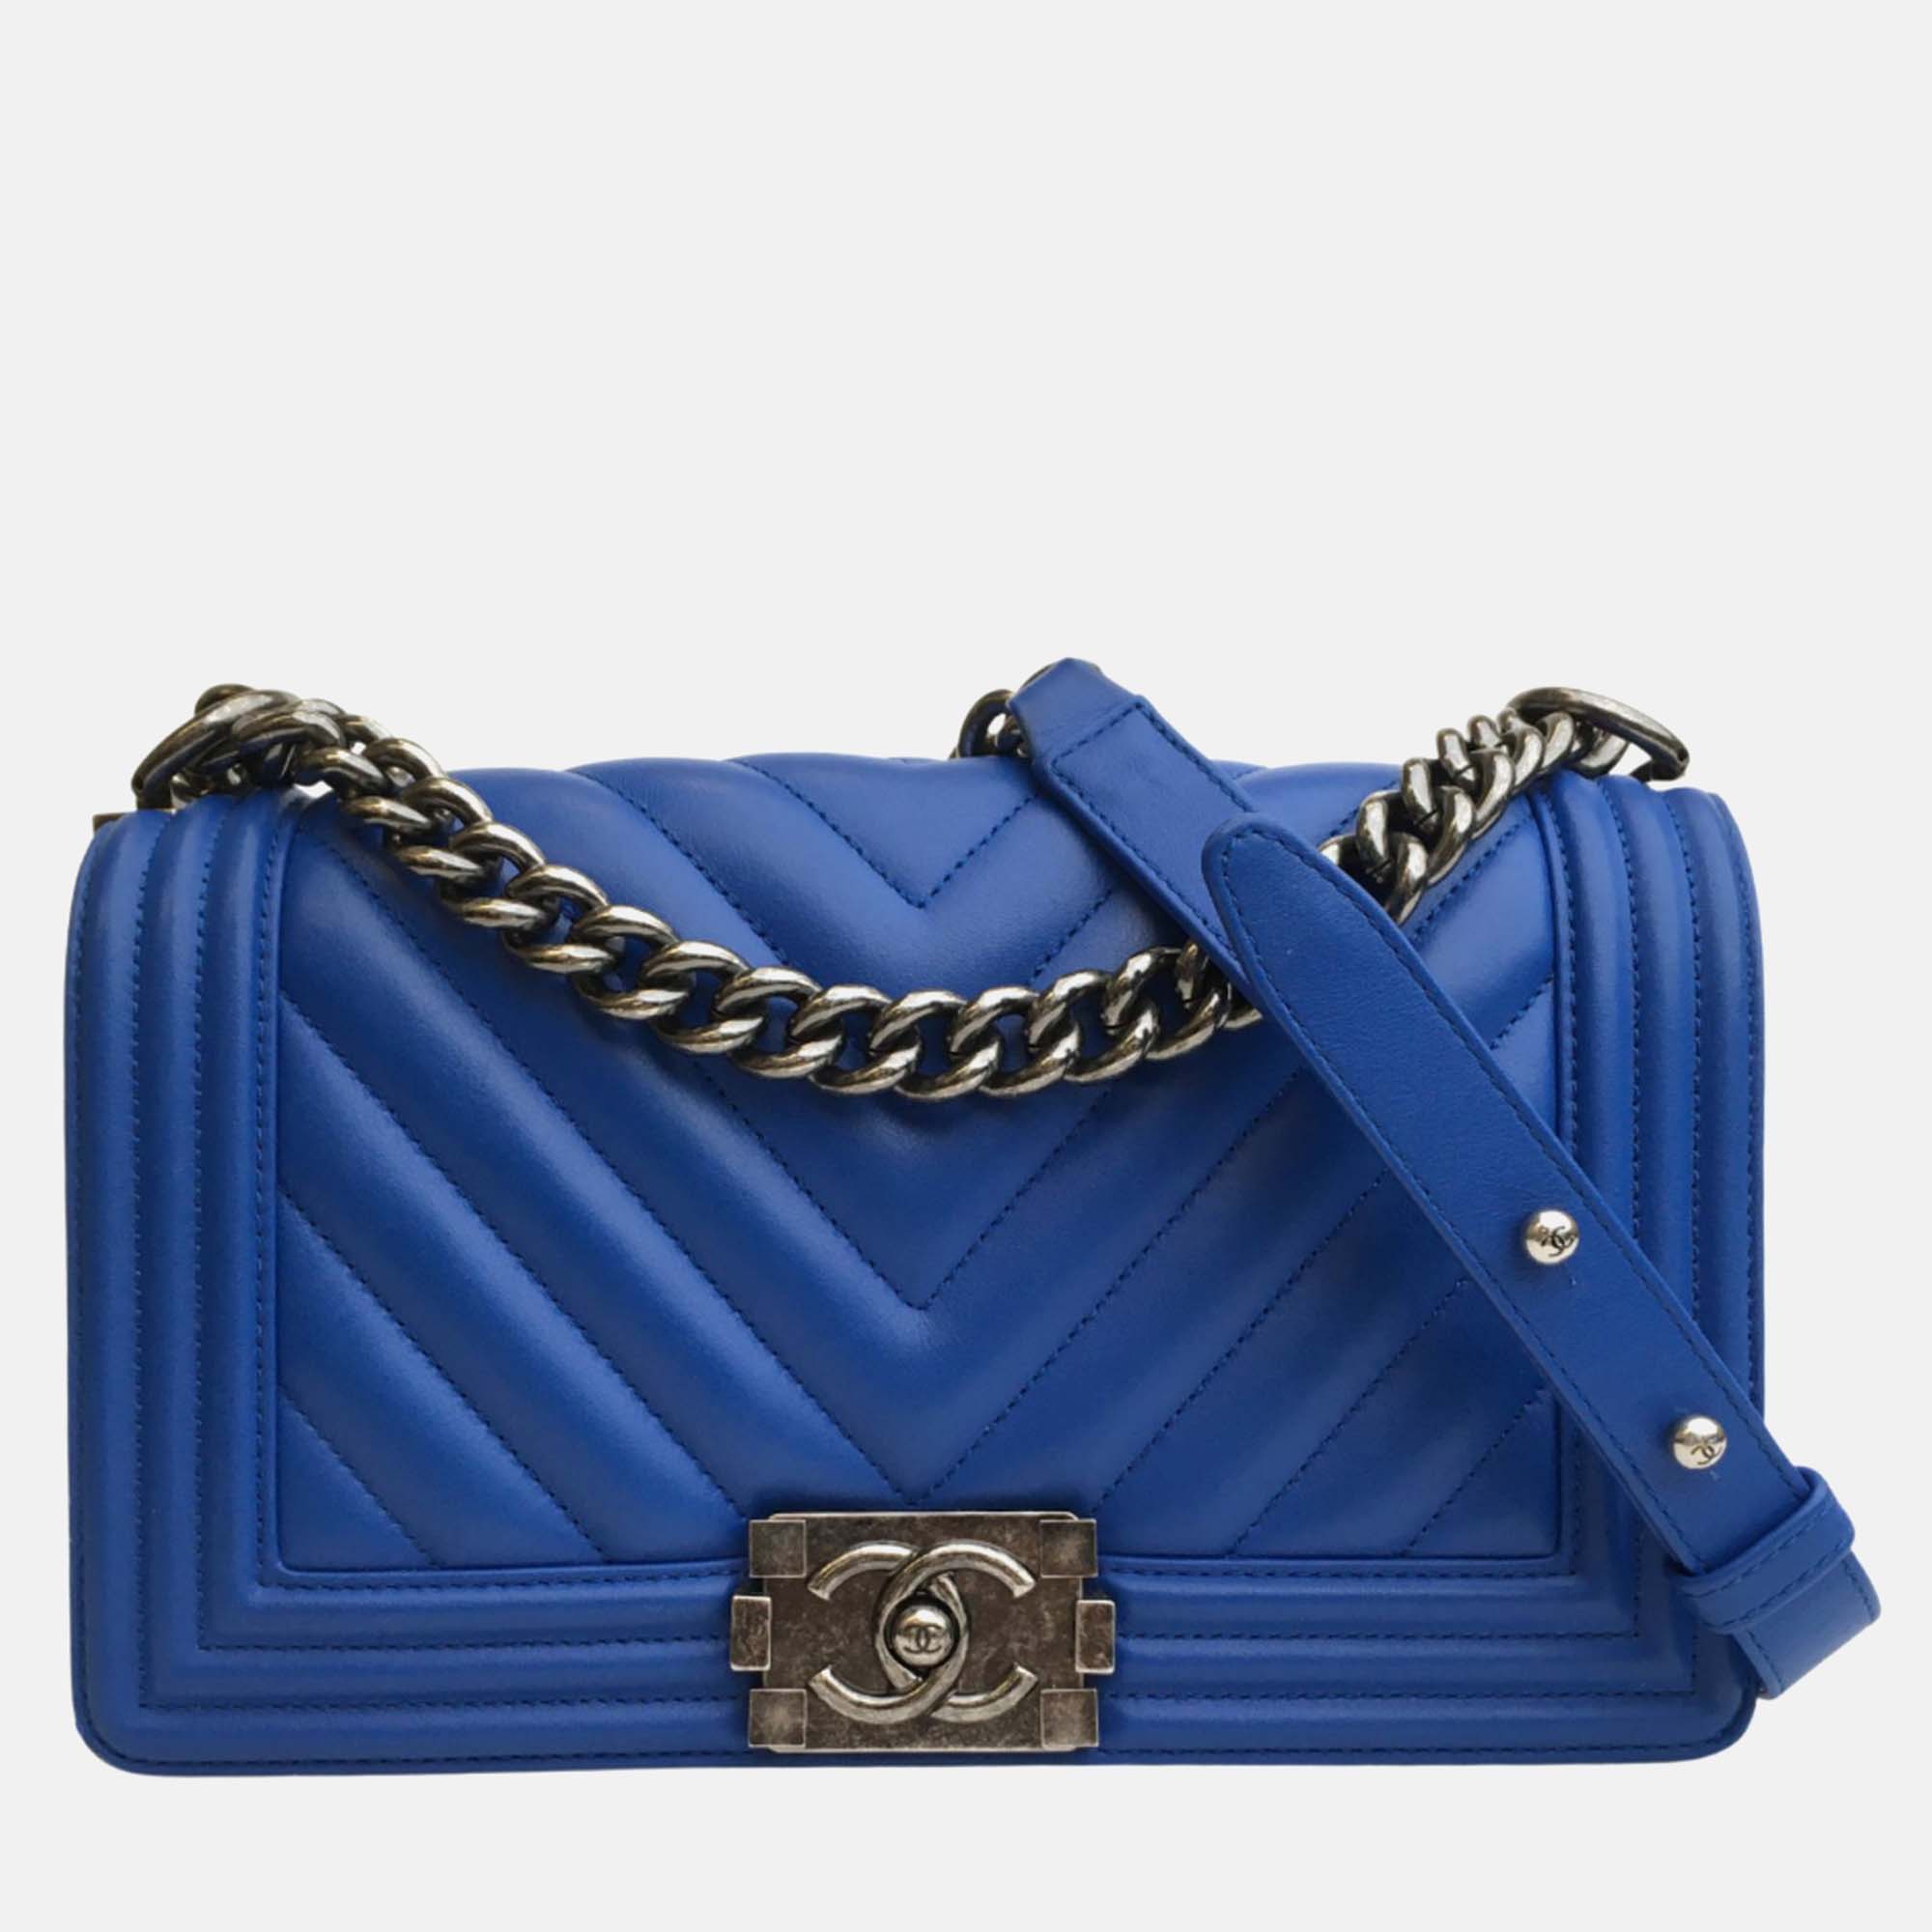 Chanel blue leather medium boy shoulder bag